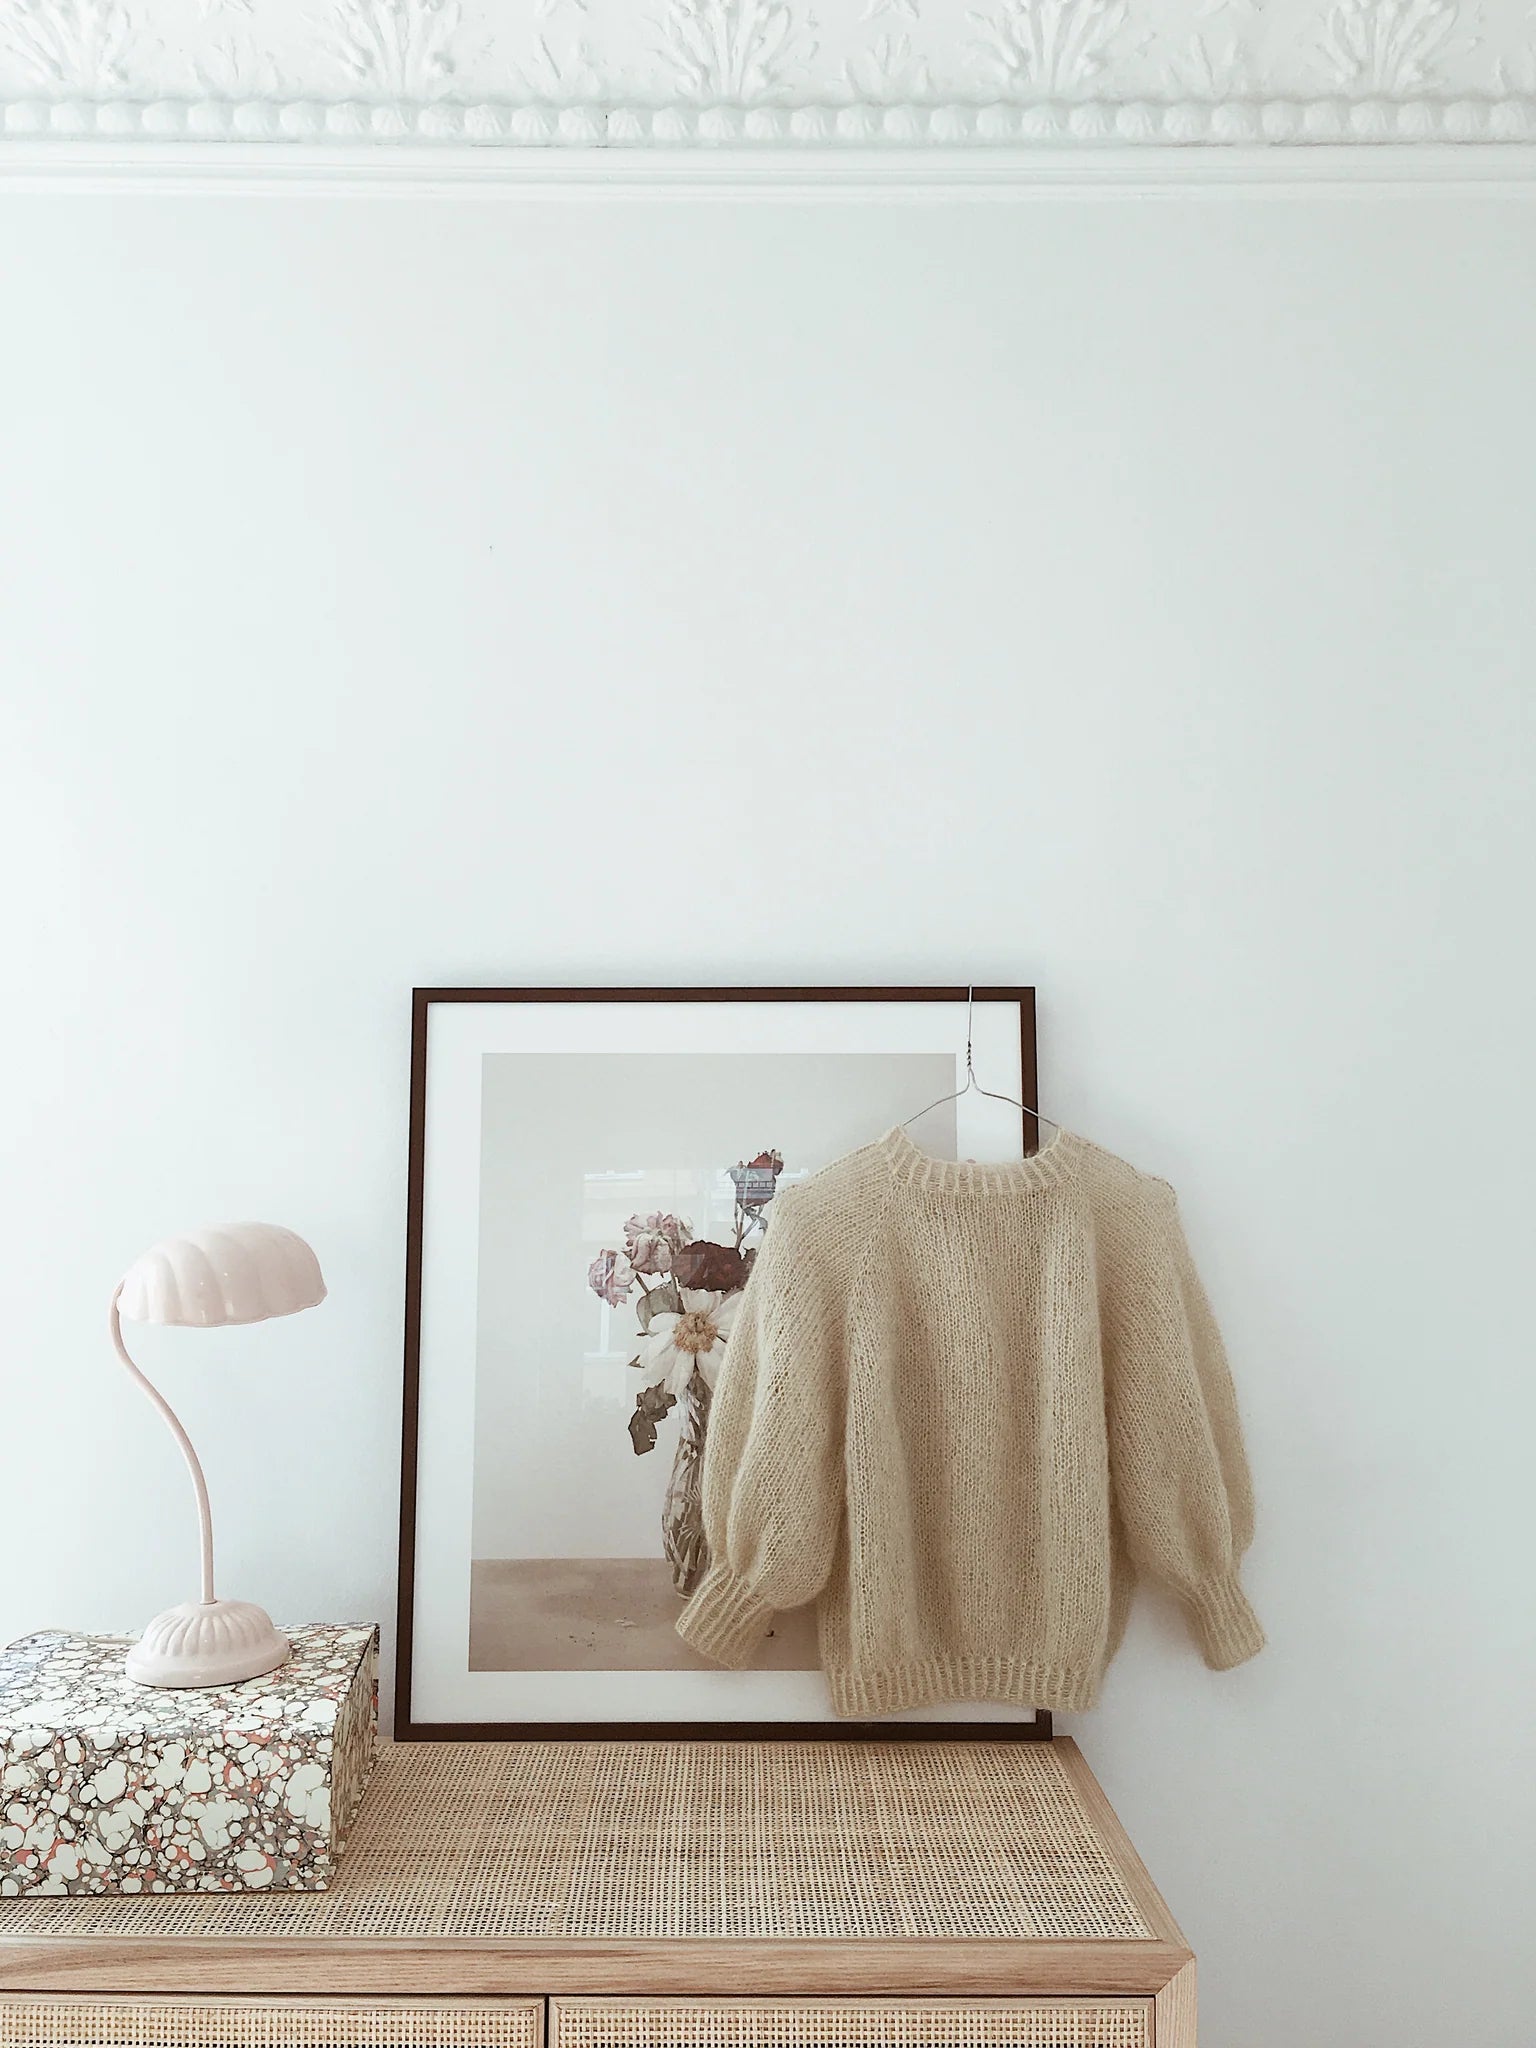 Sweater No. 1 My Favourite Things Knitwear – Strickpaket Kaschmir